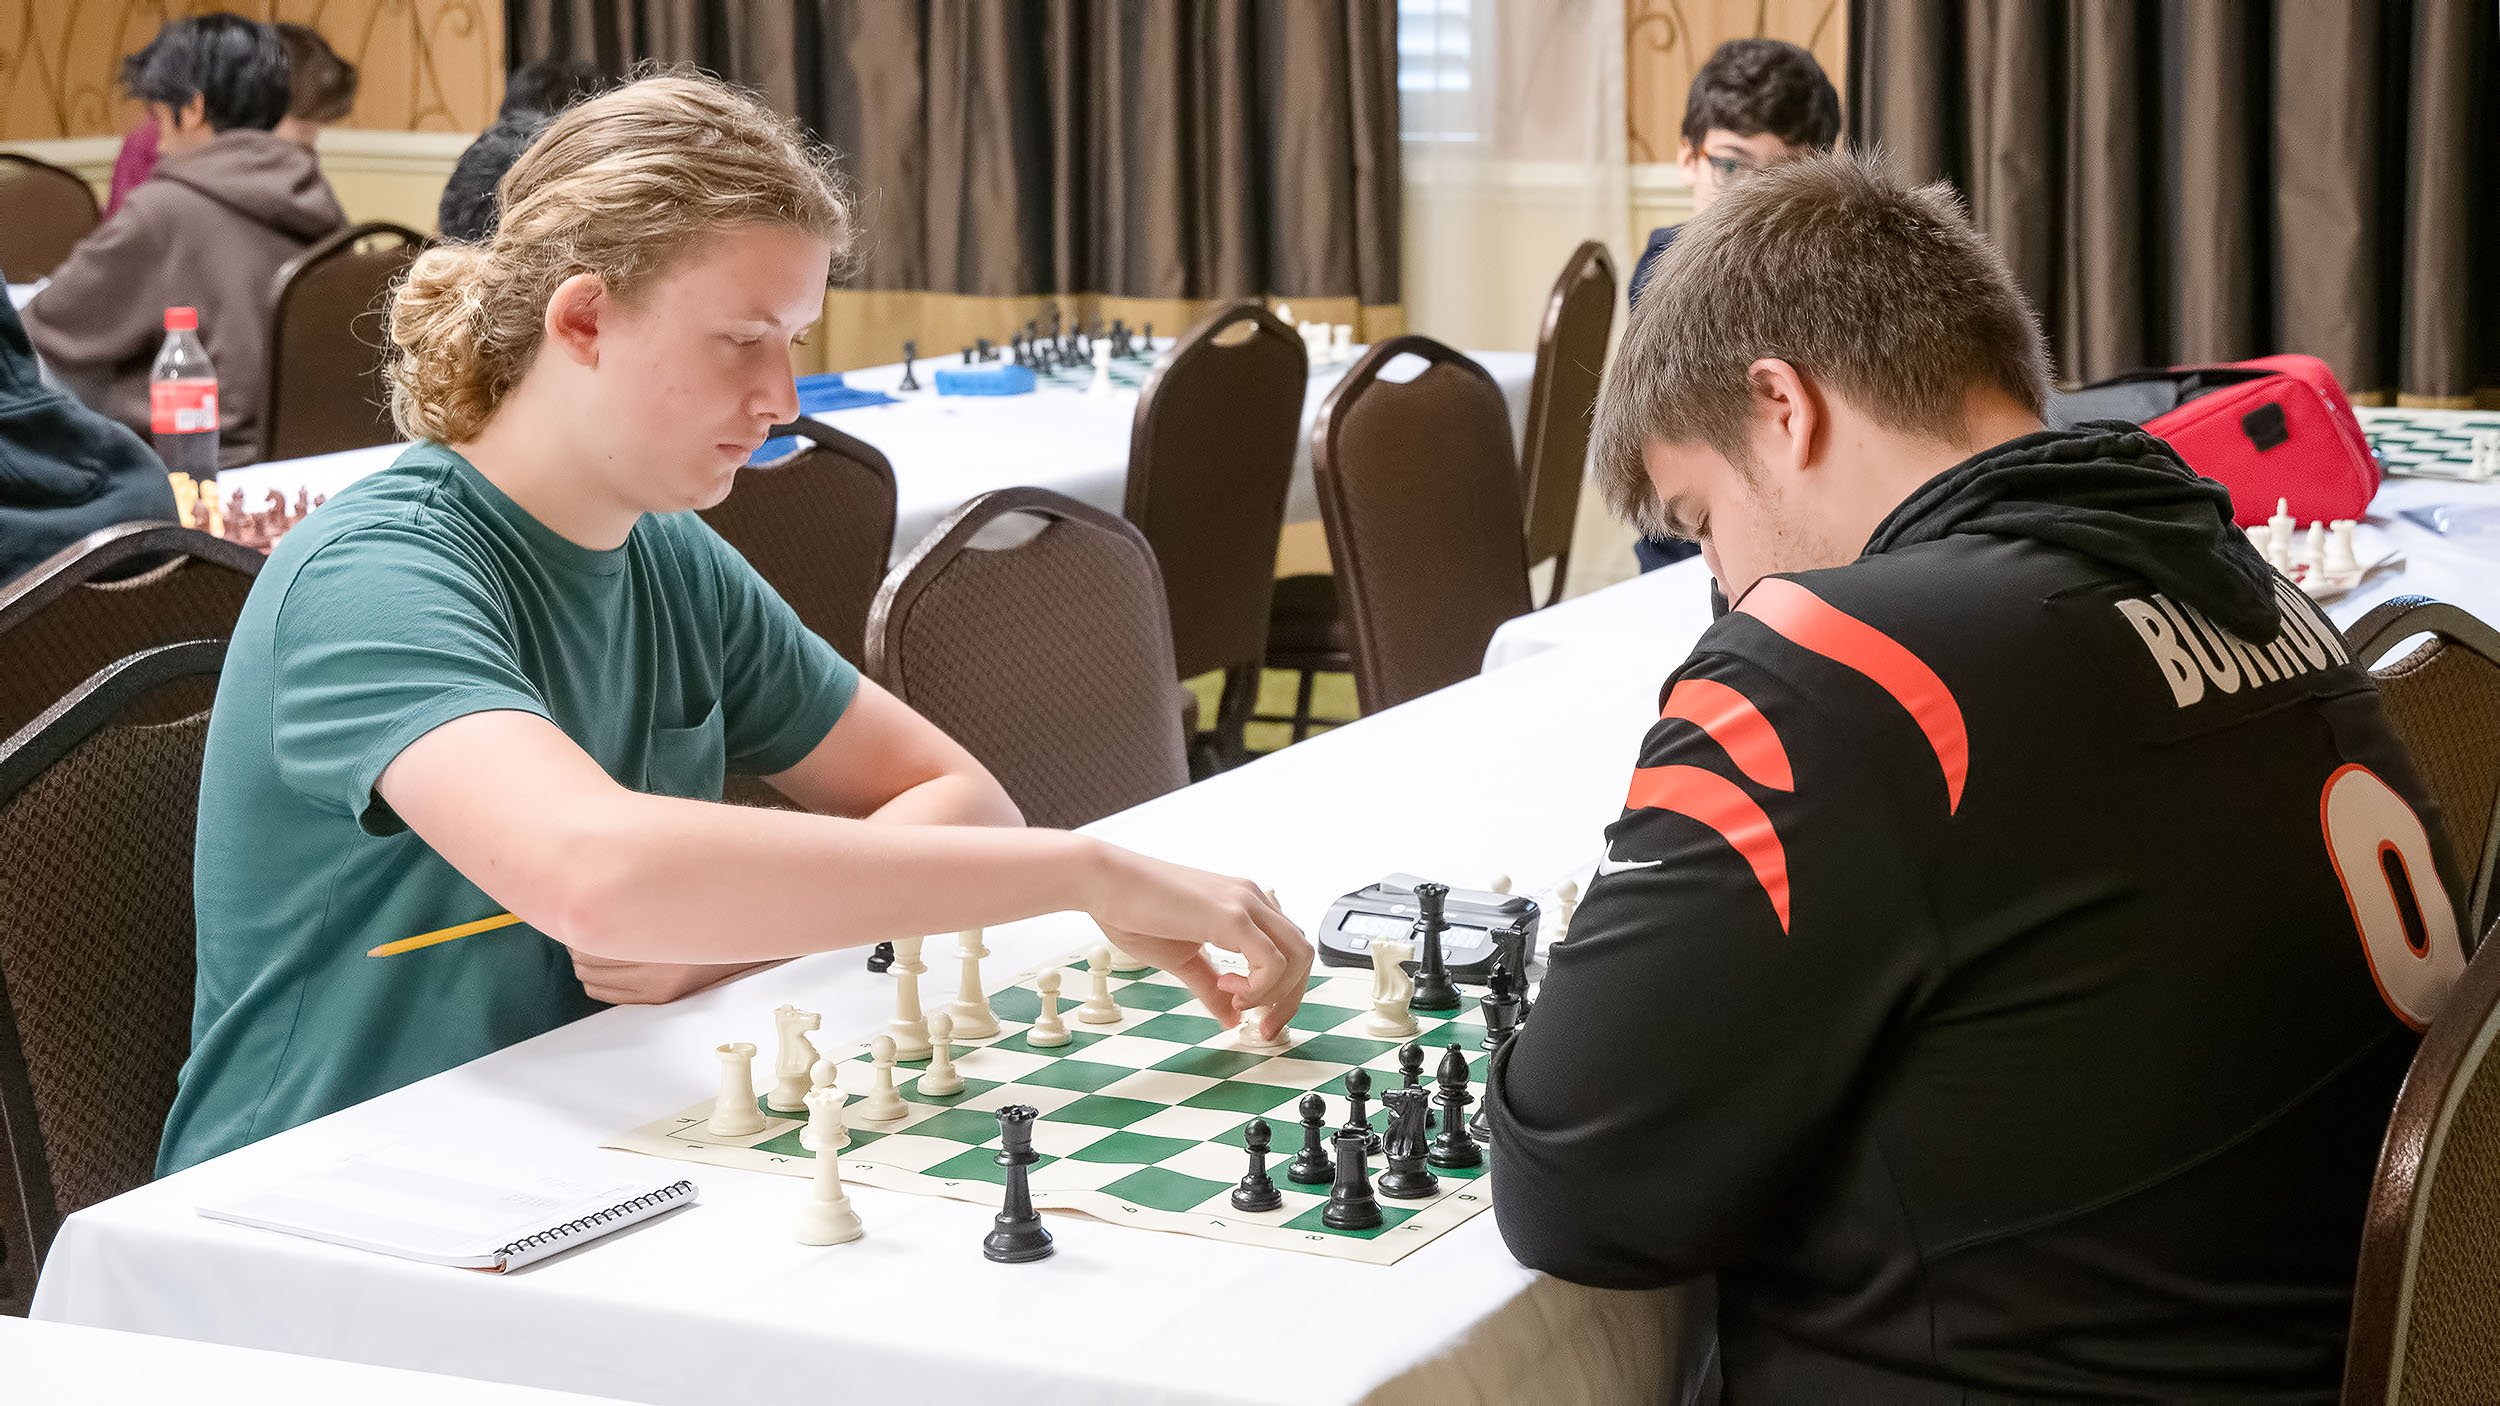 Marquette open chess tournament, Nov. 11